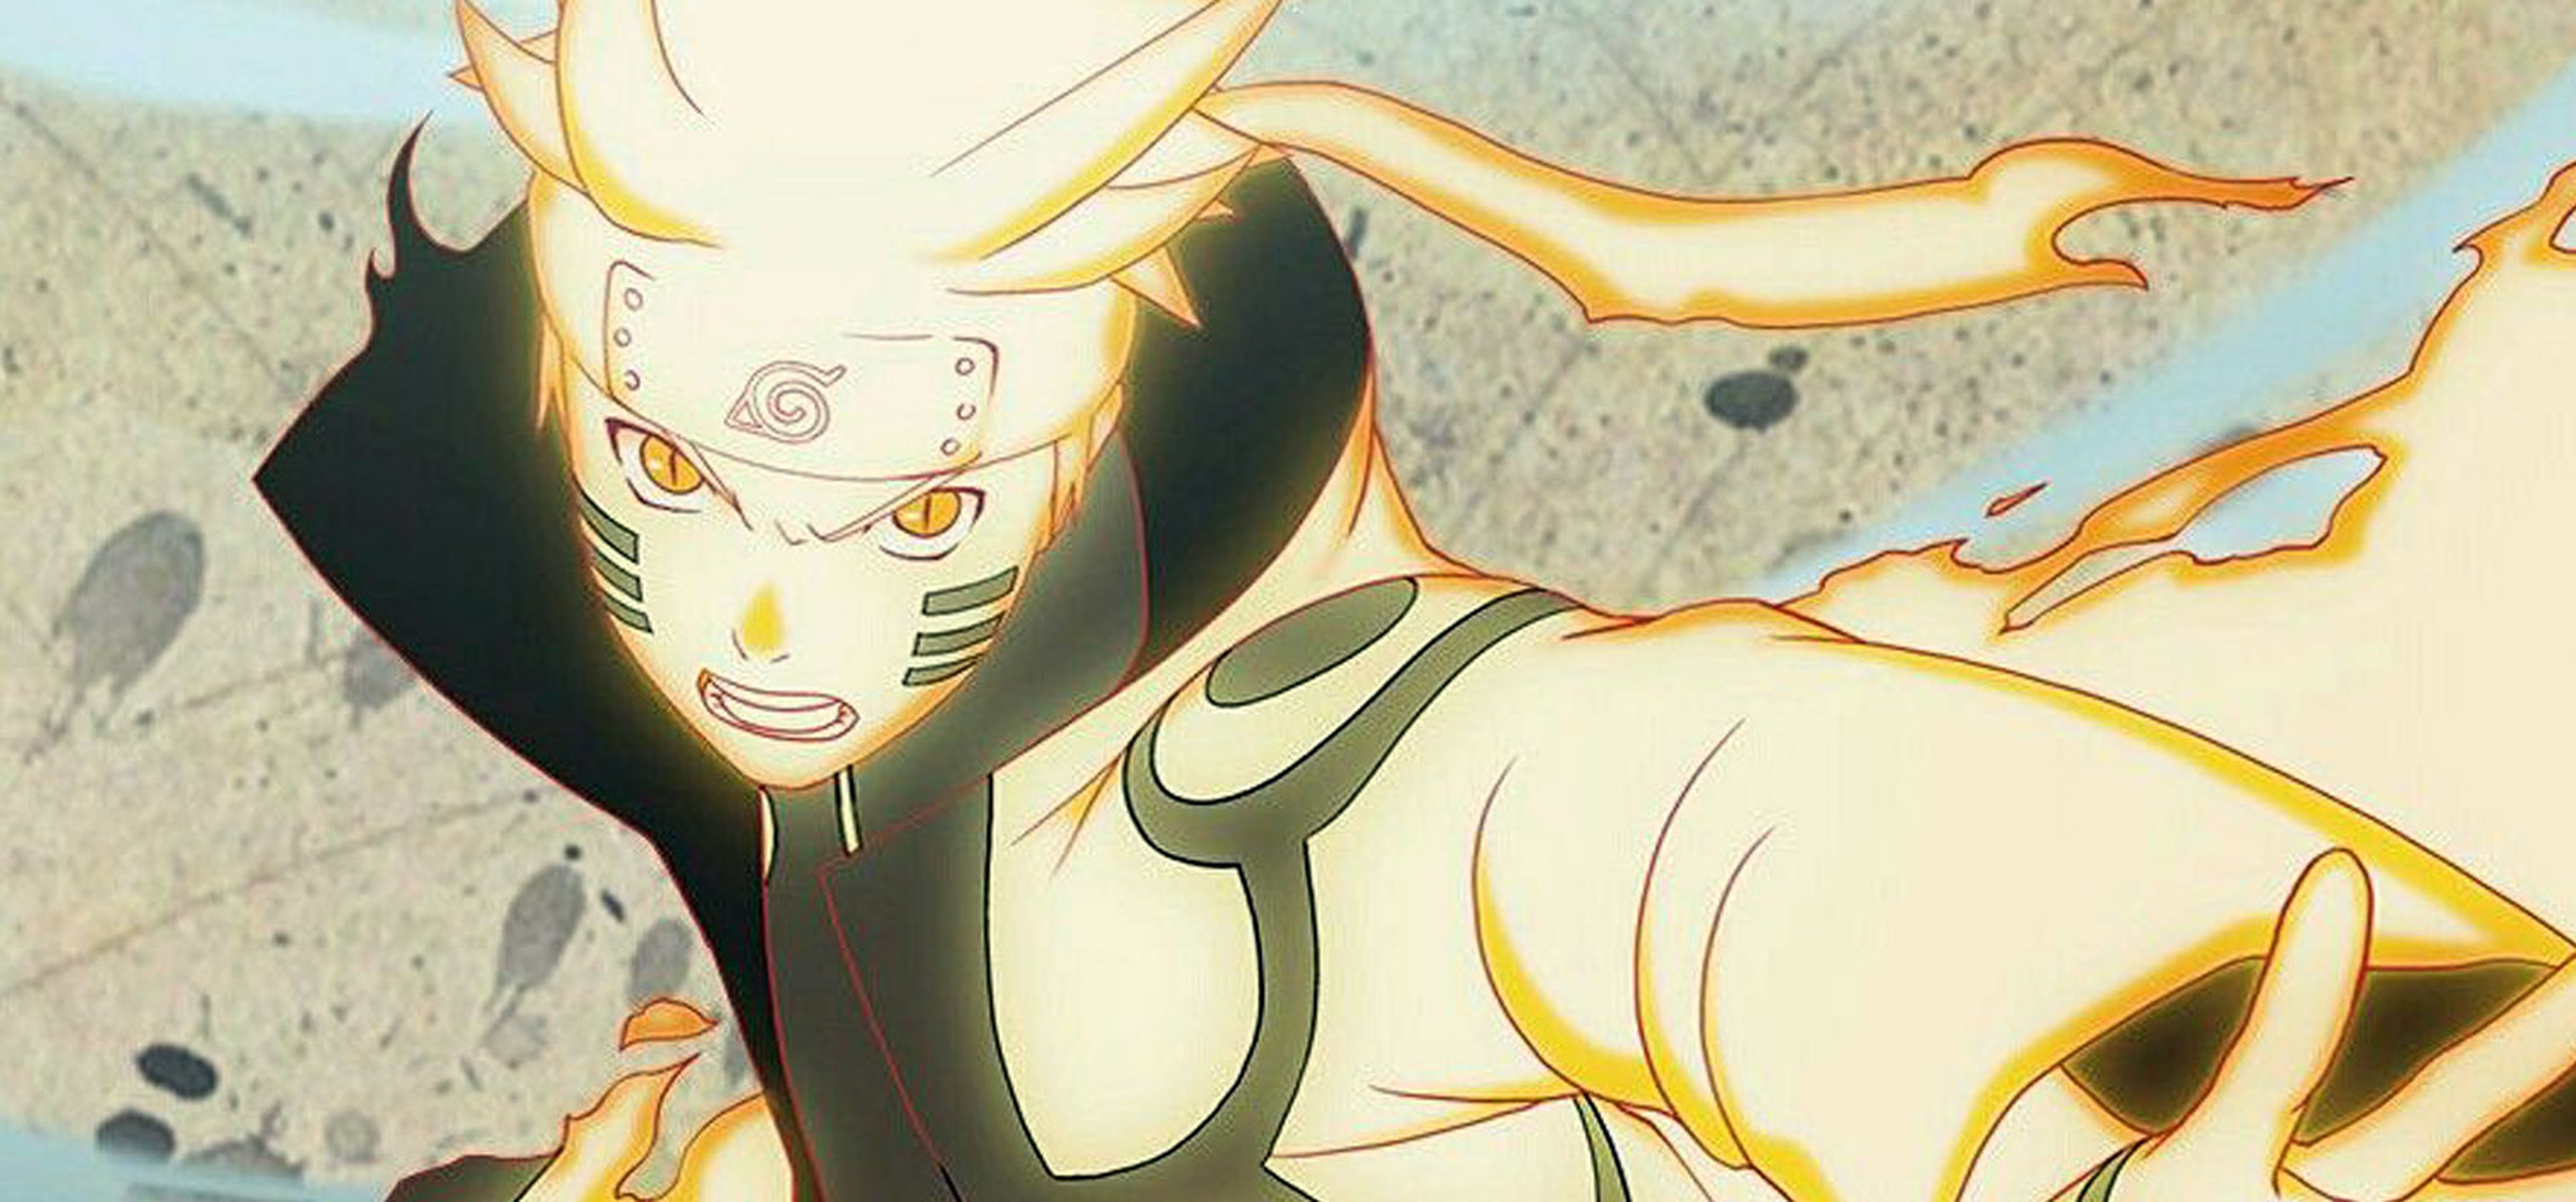 El Dia Que Naruto Se Convierte En Hokage 